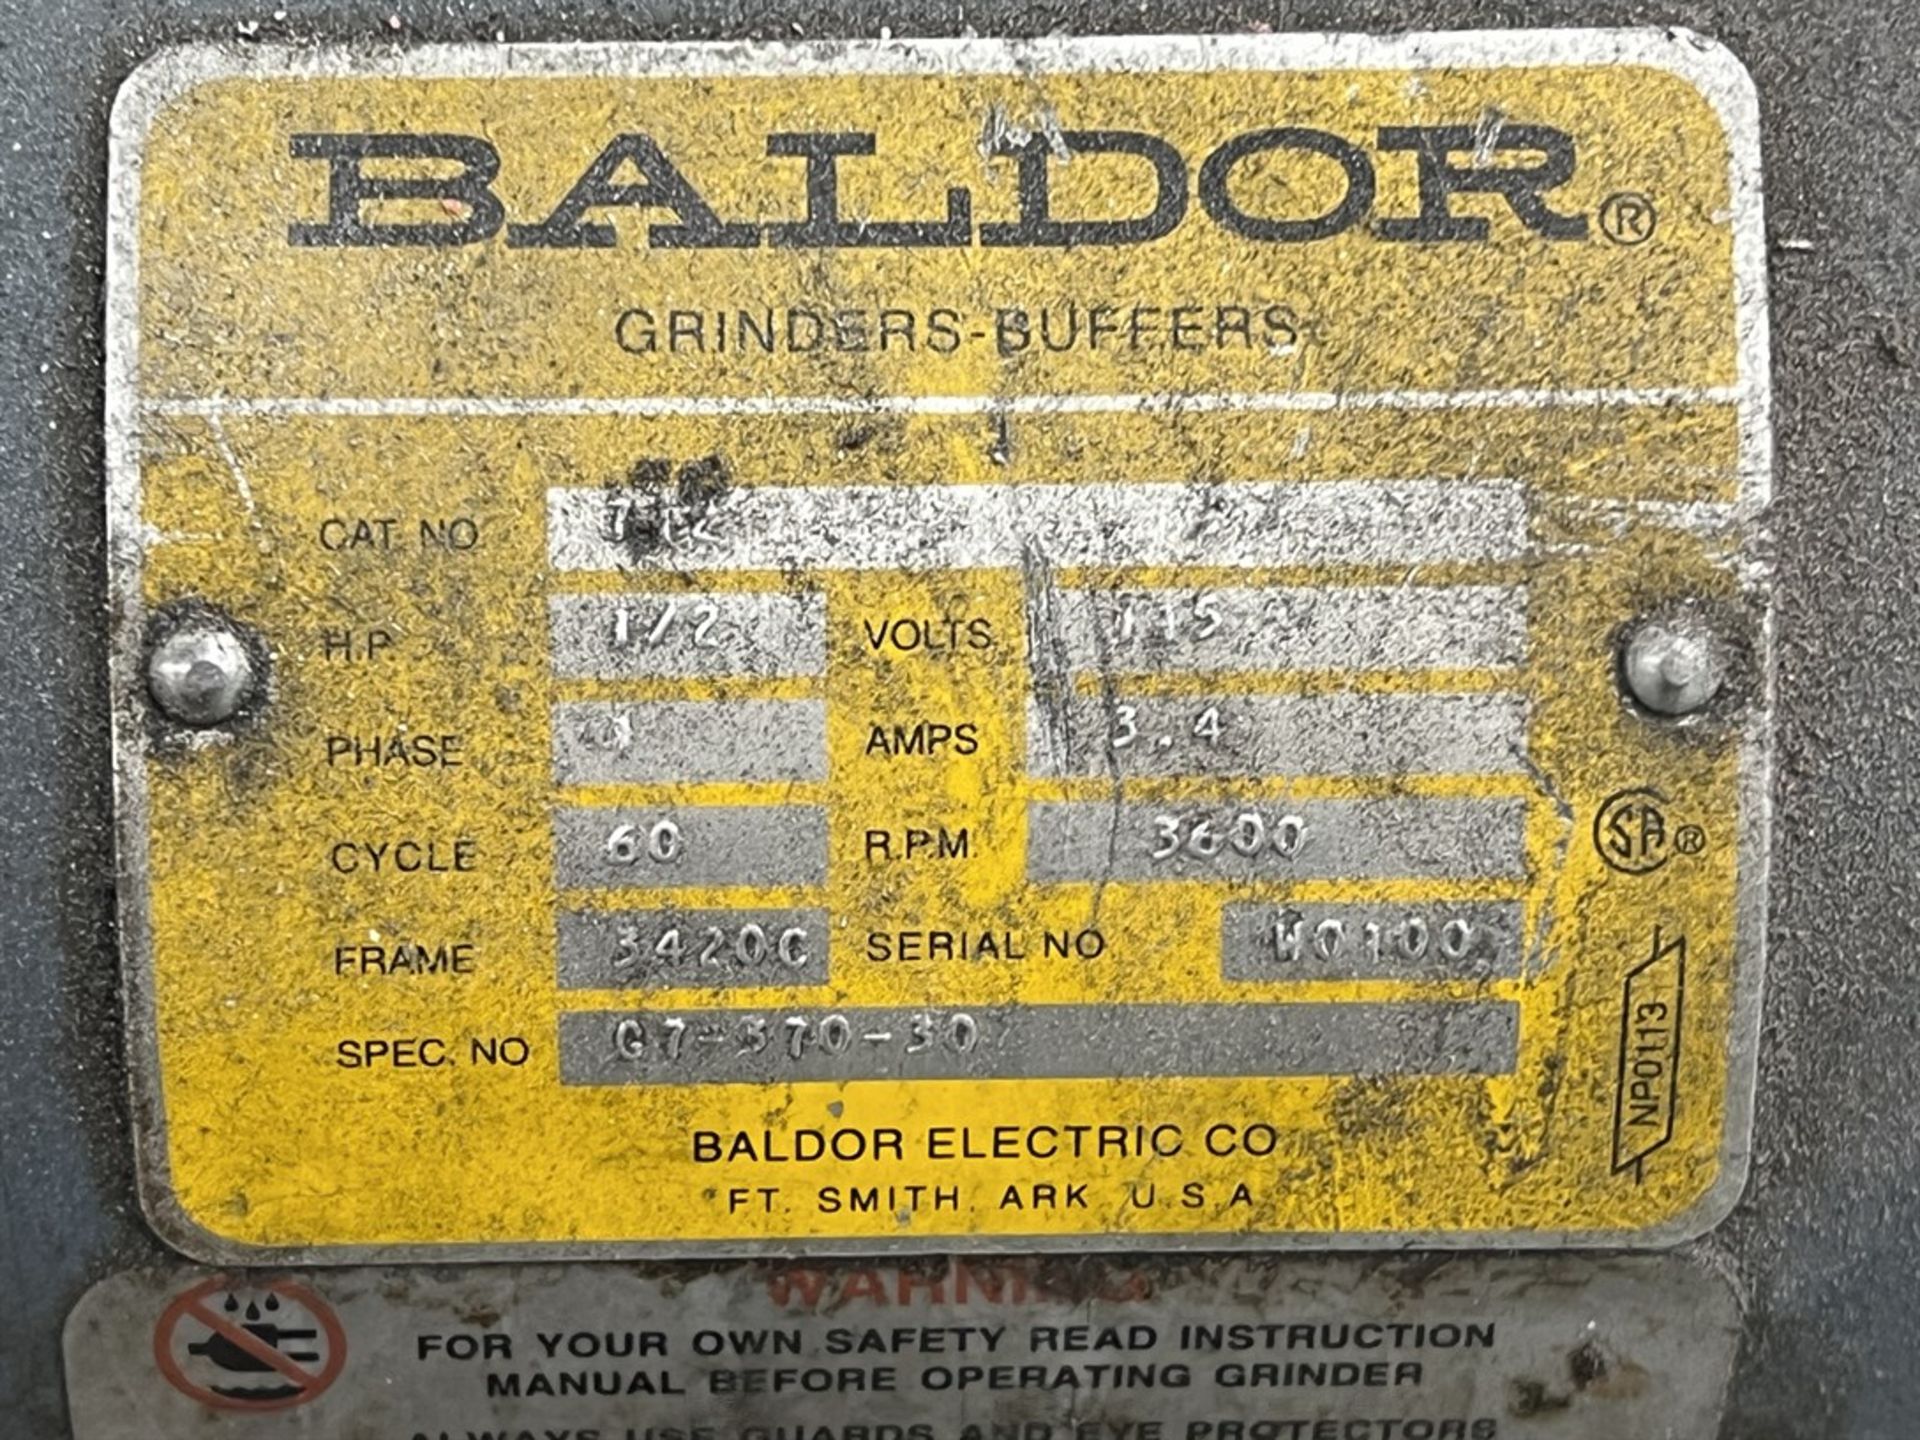 BALDOR 712 Dual End Pedestal Grinder, 3600 RPM, 1/2 HP - Image 4 of 4